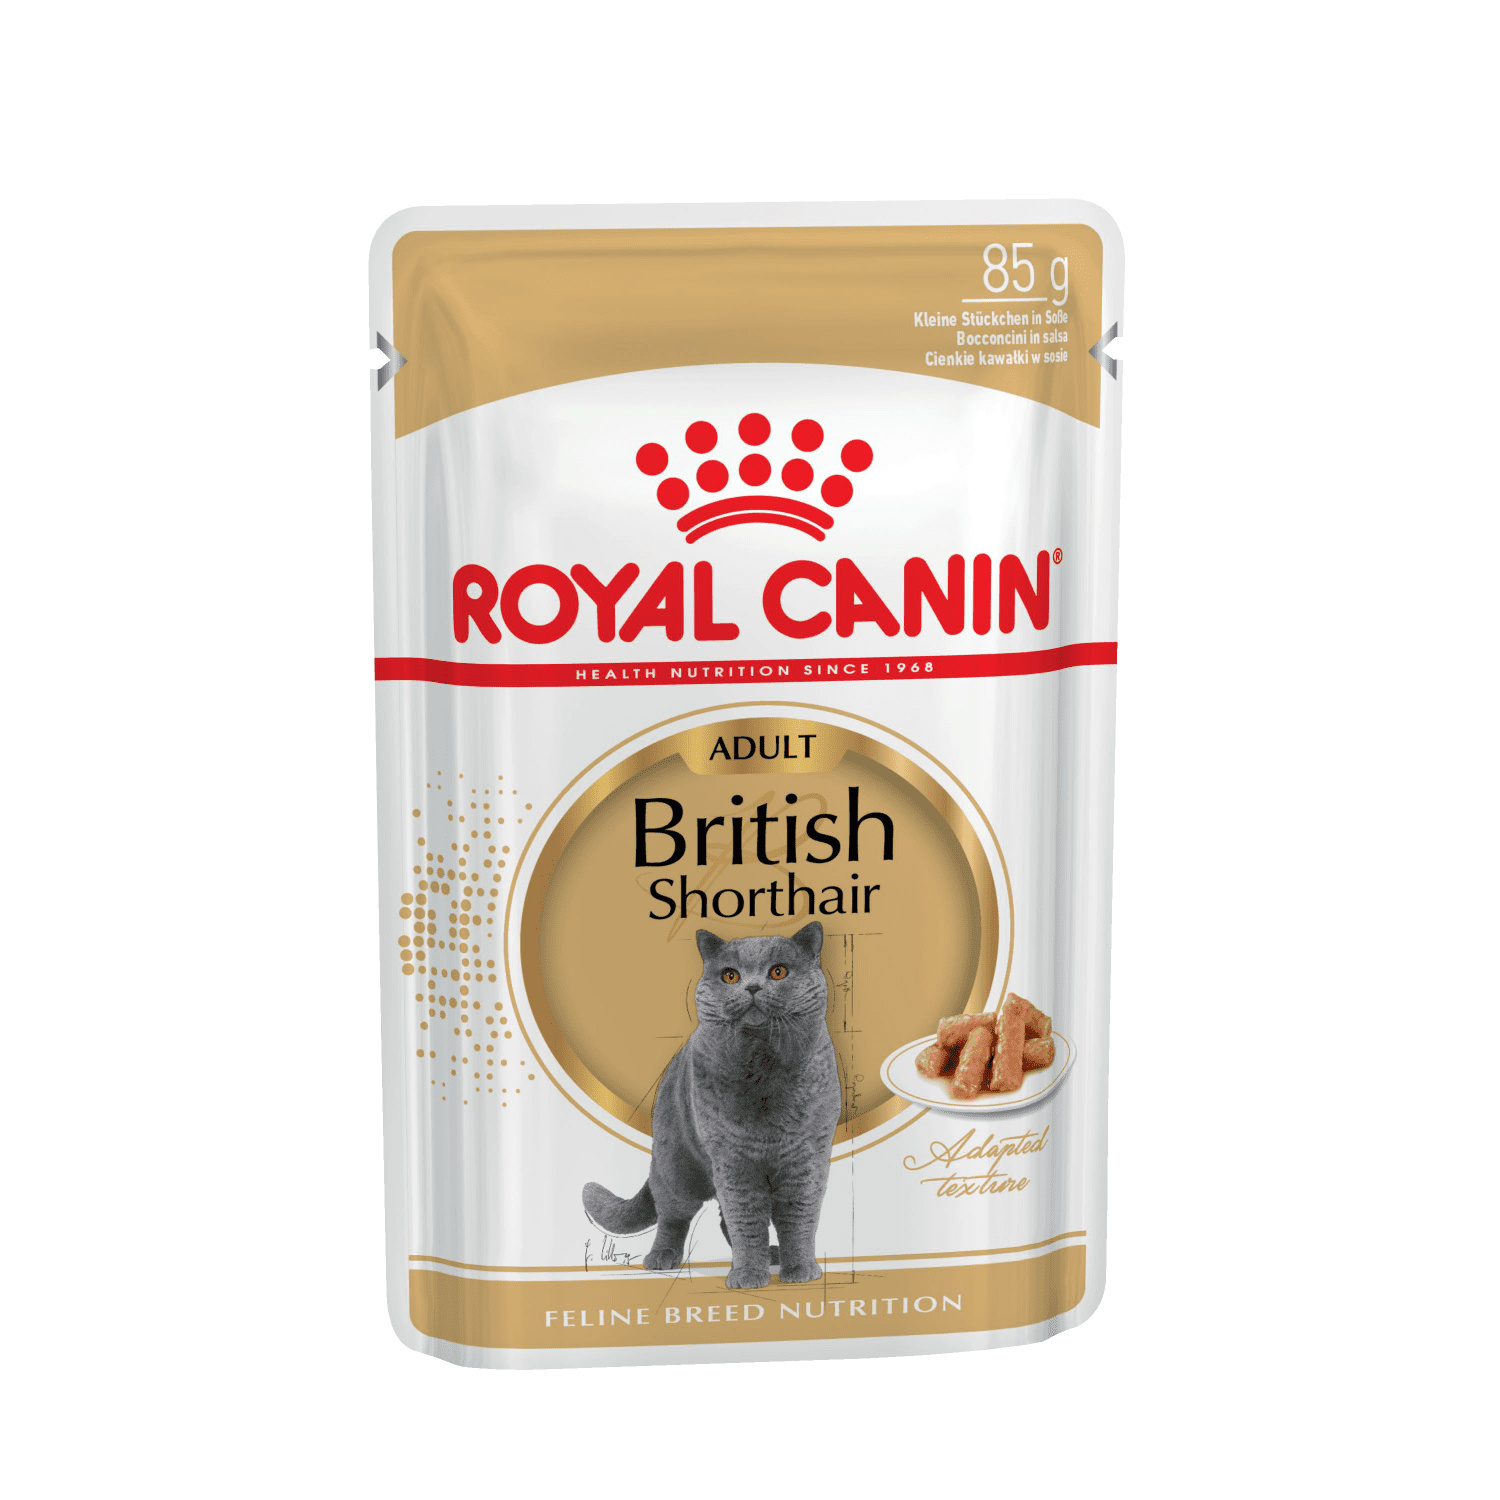 Royal Canin паучи Royal Canin паучи паучи кусочки в соусе для Британской короткошерстной кошки старше 12 месяцев (2,38 кг) royal canin паучи royal canin паучи кусочки в желе для котят 4 12 месяцев 2 38 кг